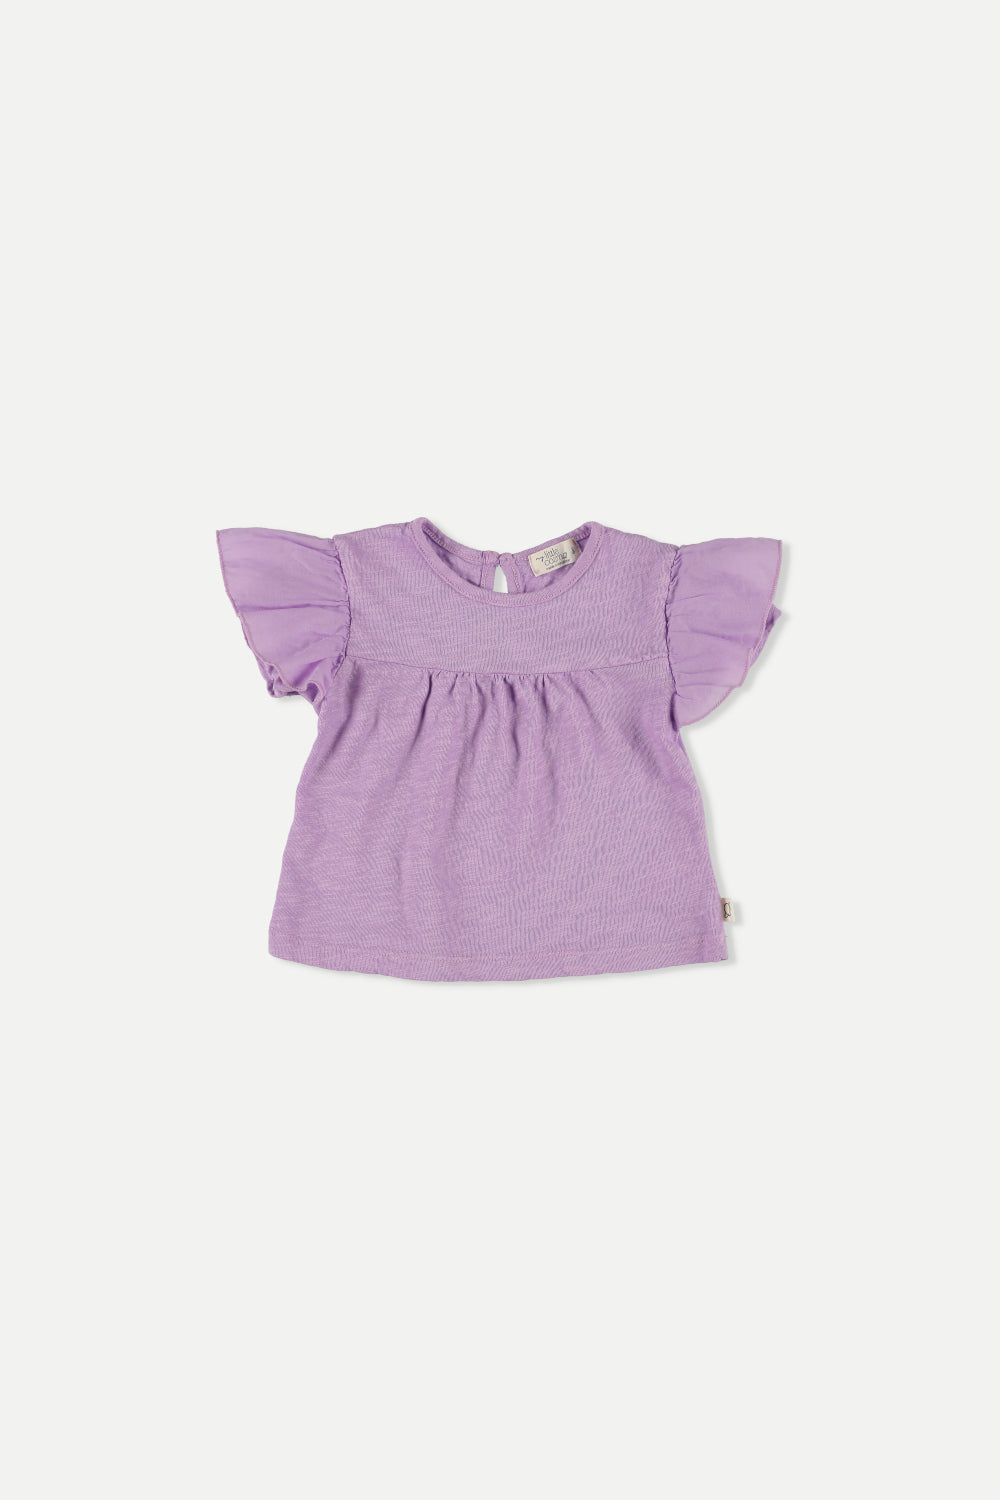 My little cozmo - oli280 - flutter blouse - purple